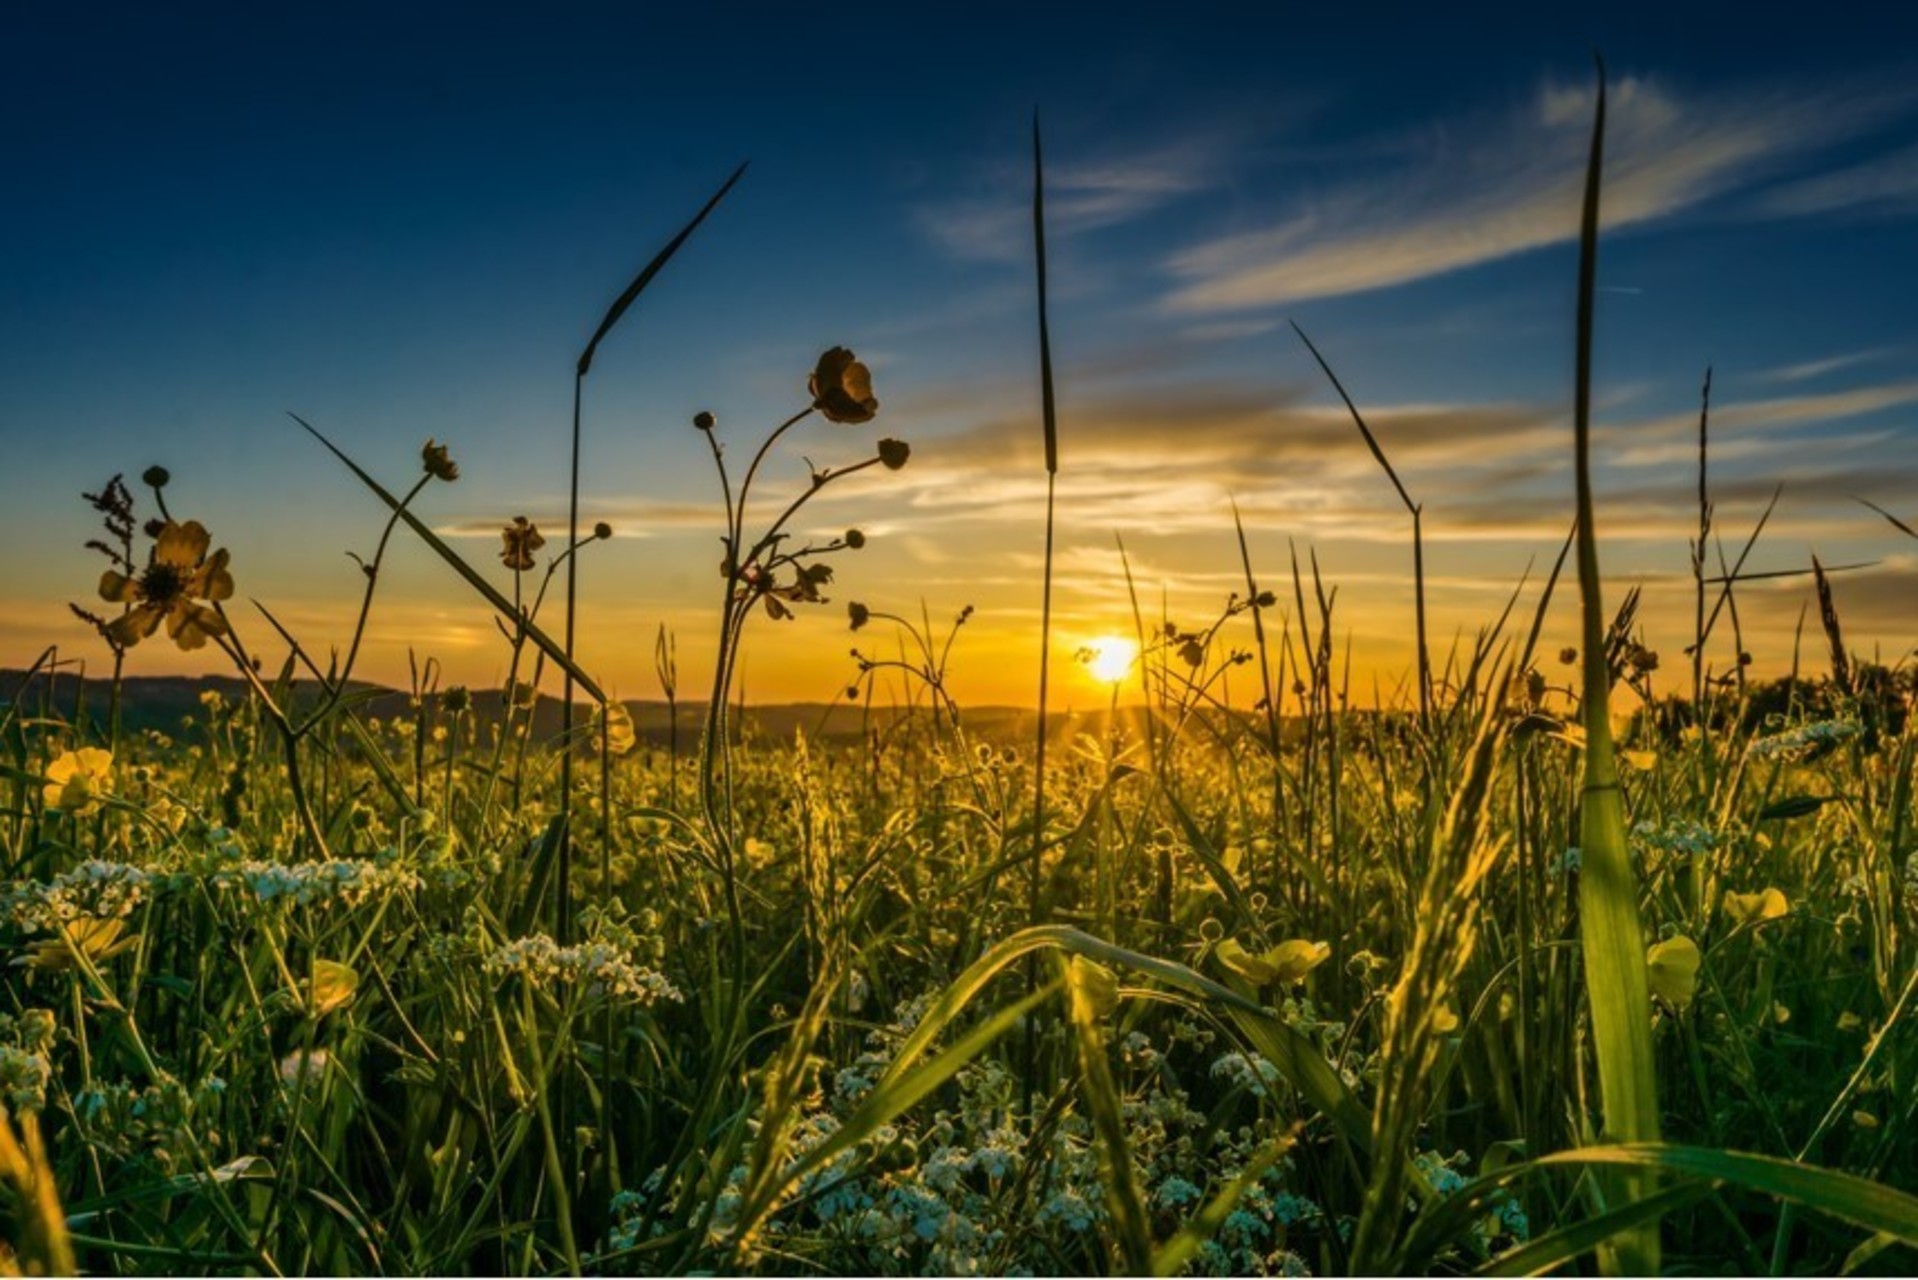 Sommerwiese in Münsingen im Biosphärengebiet Schwäbische Alb. Eine hohe Blumenwiese in der Abensonne. Die höchsten Gräser reichen bis zum oberen Bildrand, die Sonne geht im Hintergrund unter.